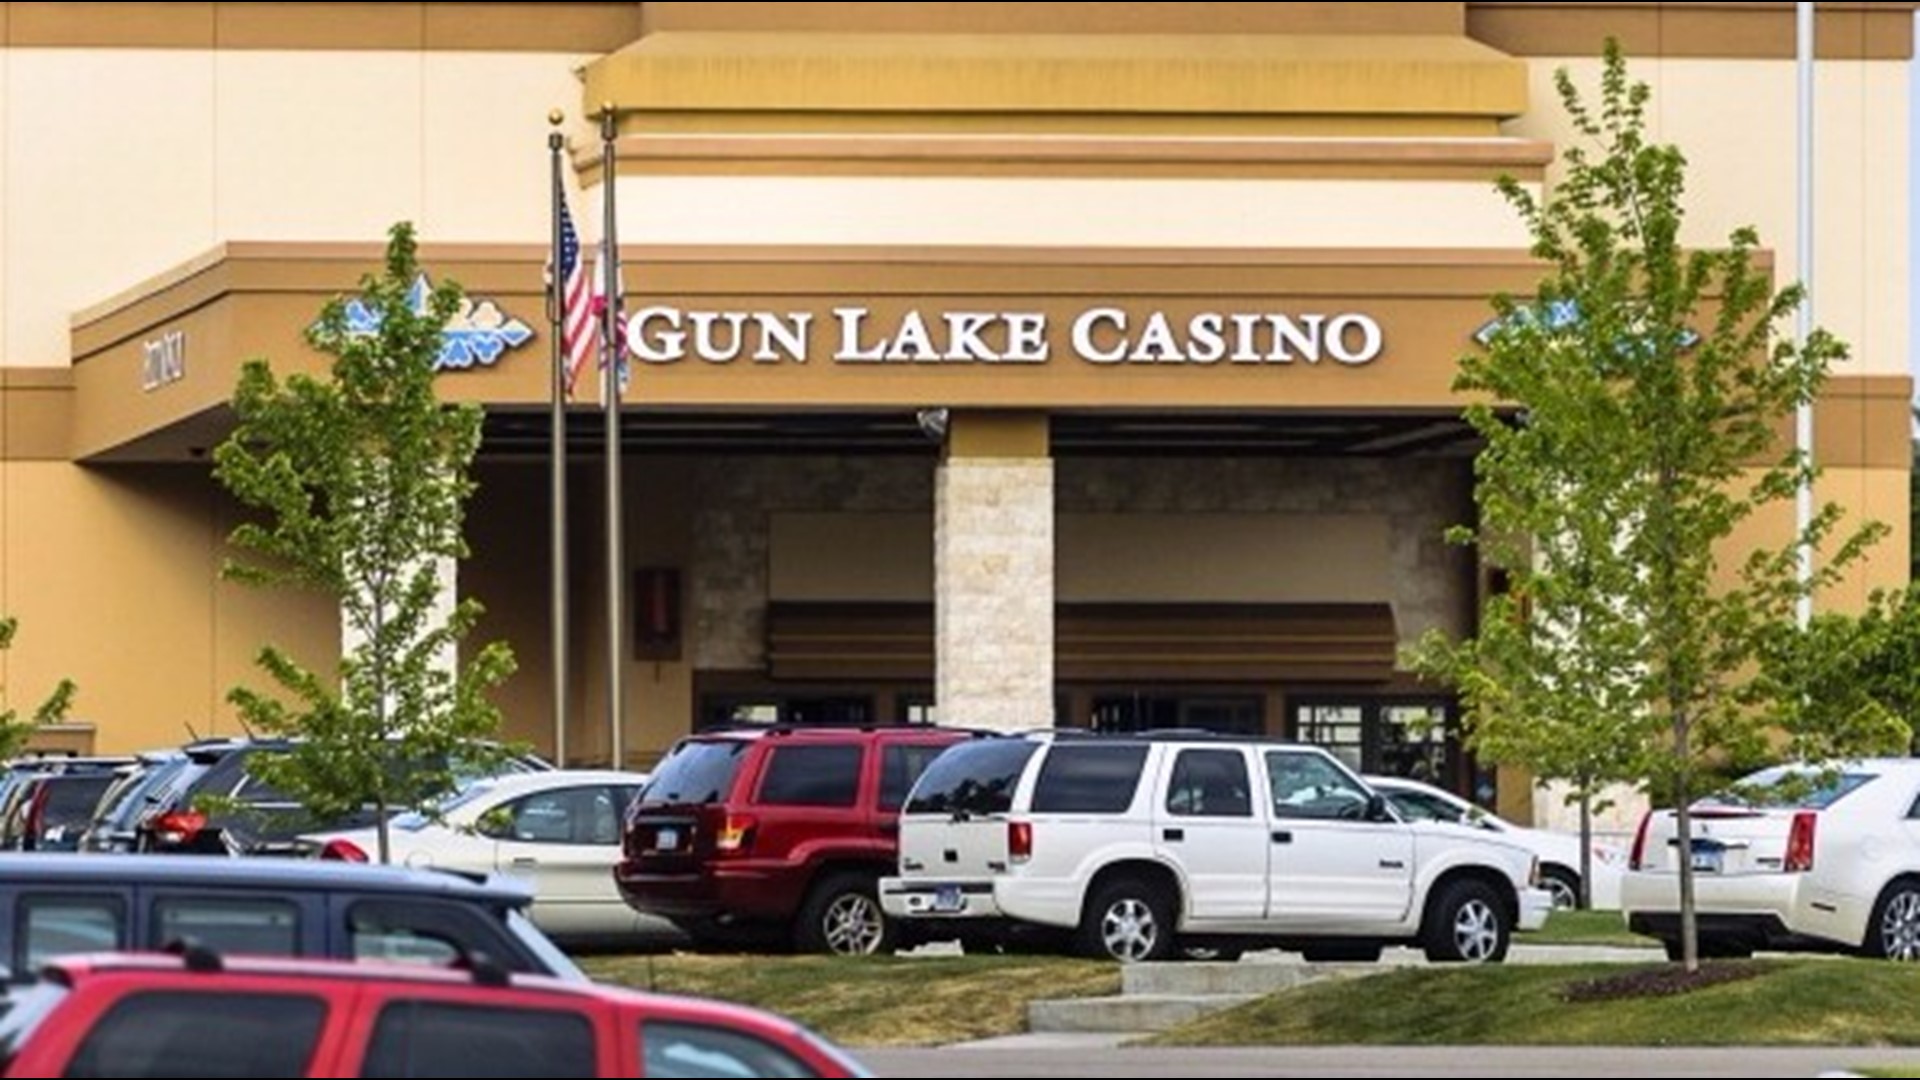 where is gun lake casino located